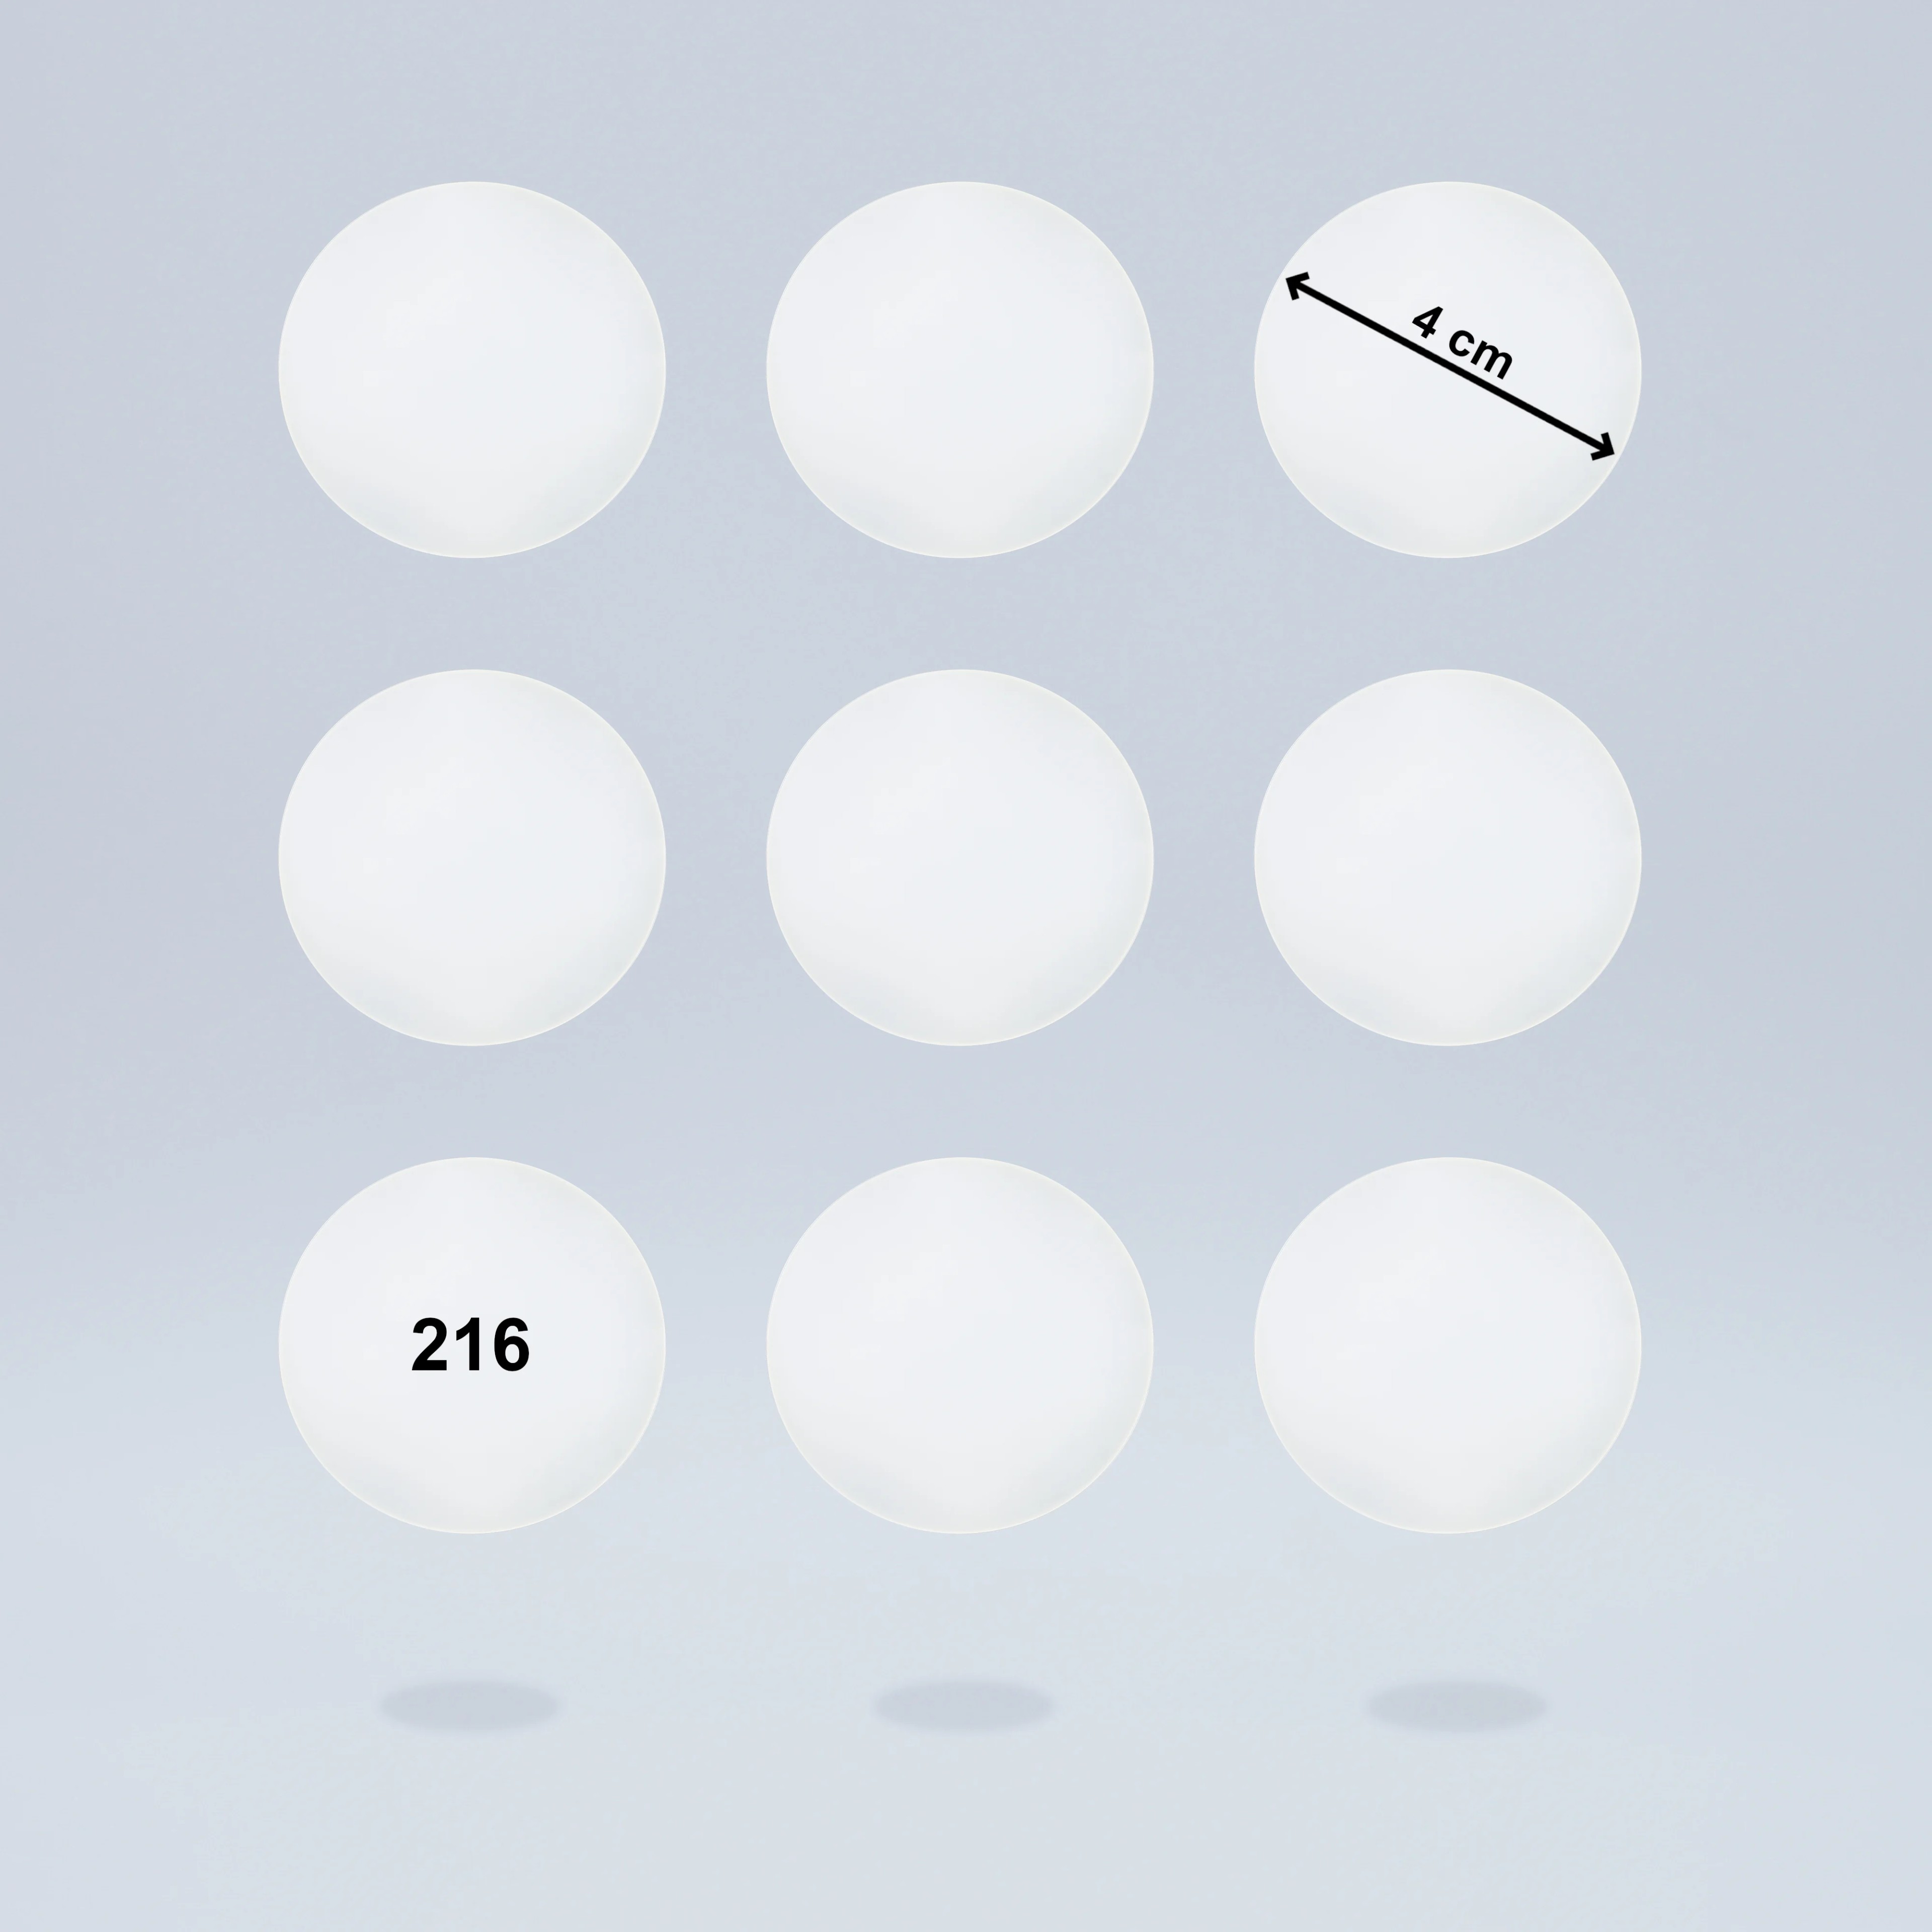 Selbstklebende Diffusorfolien für LED Lampen, ⌀4 CM Kreiszuschnitt, Milchglasfolie für schöne Optik und Lichtstreuung, Filterset mit 9 Stück